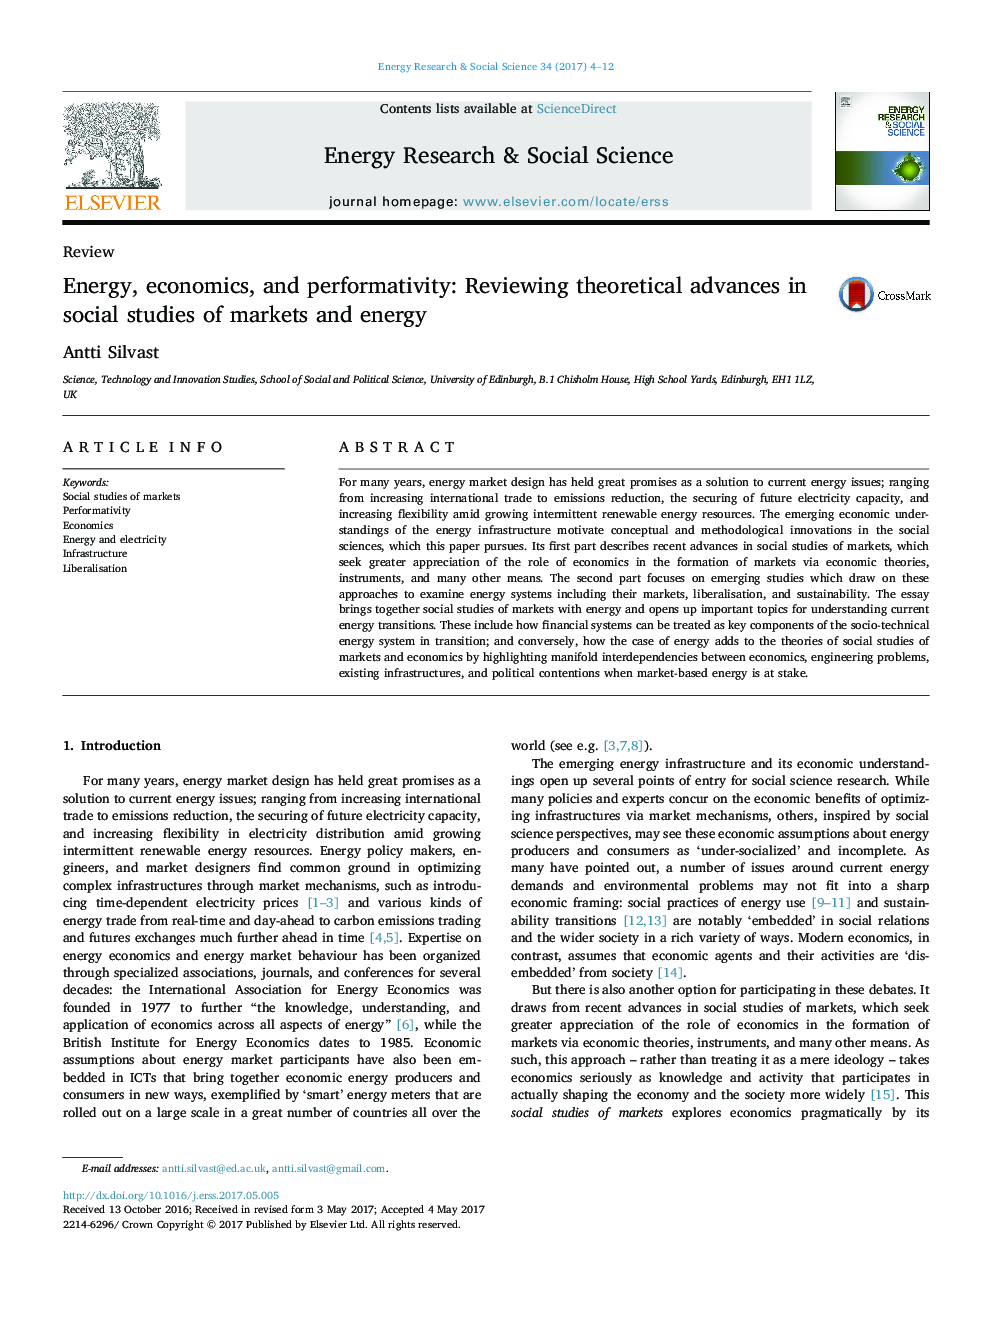 انرژی، اقتصاد و عملکردی: بررسی پیشرفت های نظری در مطالعات اجتماعی بازارها و انرژی